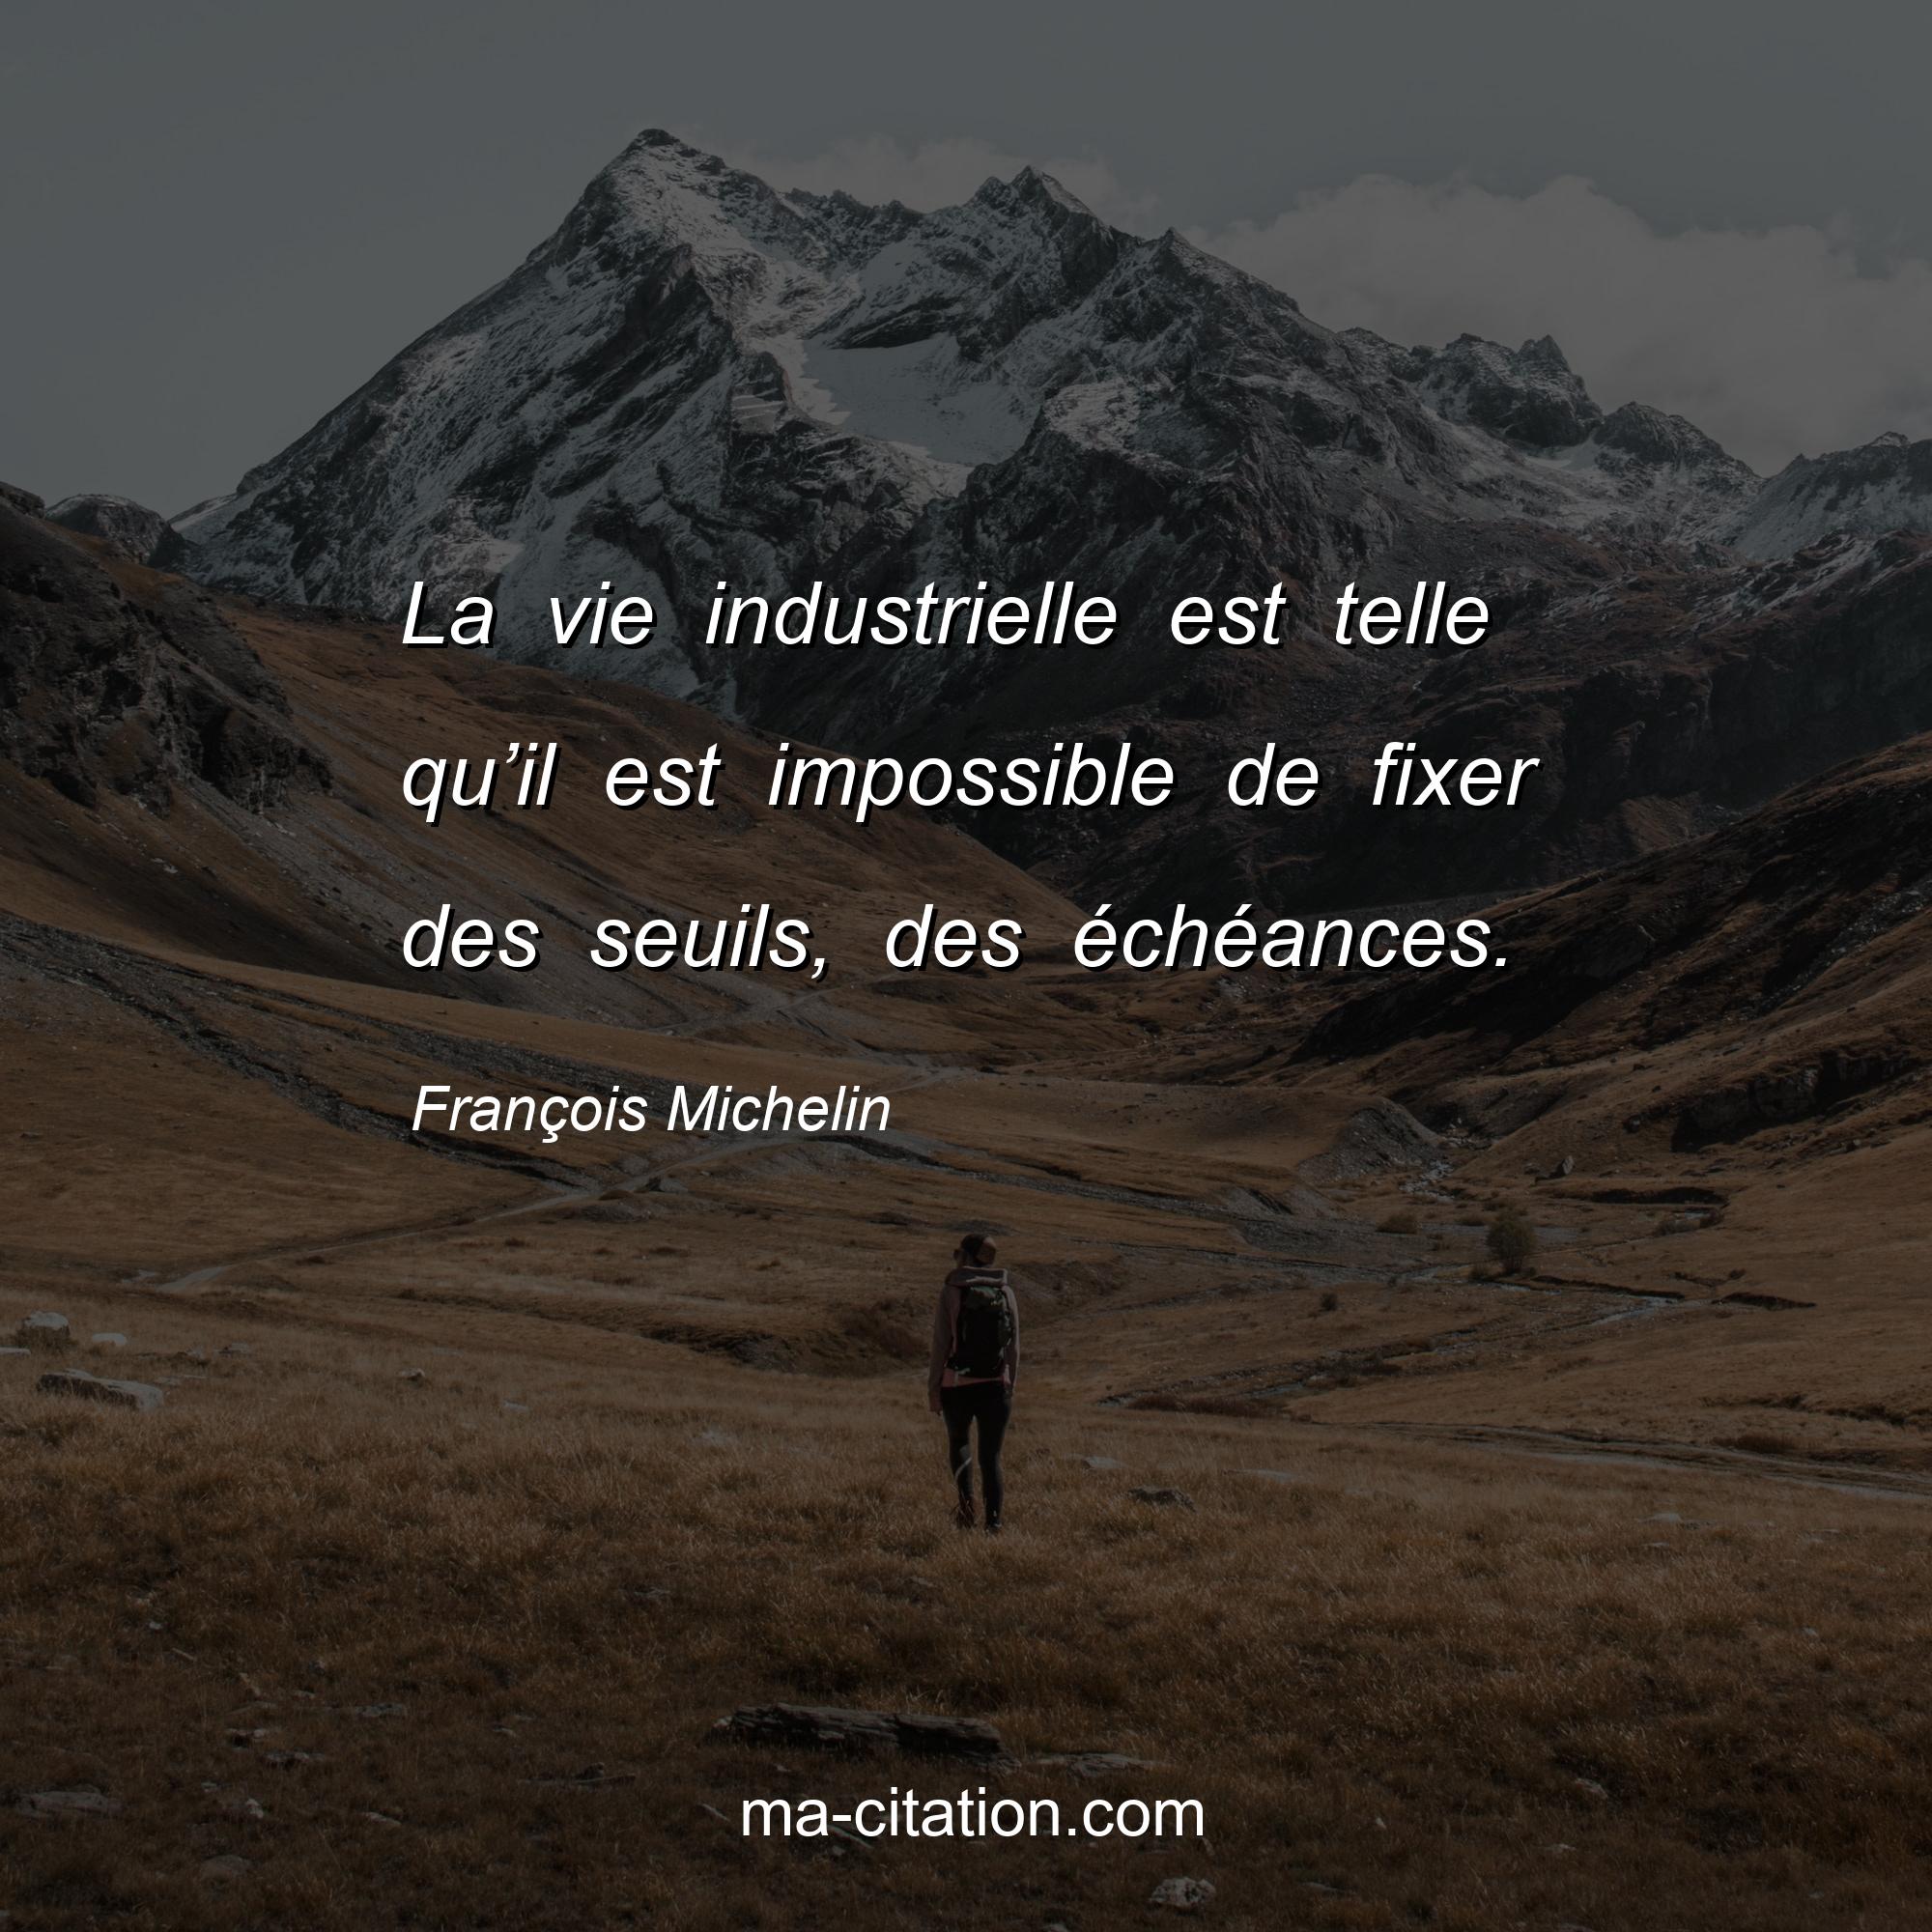 François Michelin : La vie industrielle est telle qu’il est impossible de fixer des seuils, des échéances.